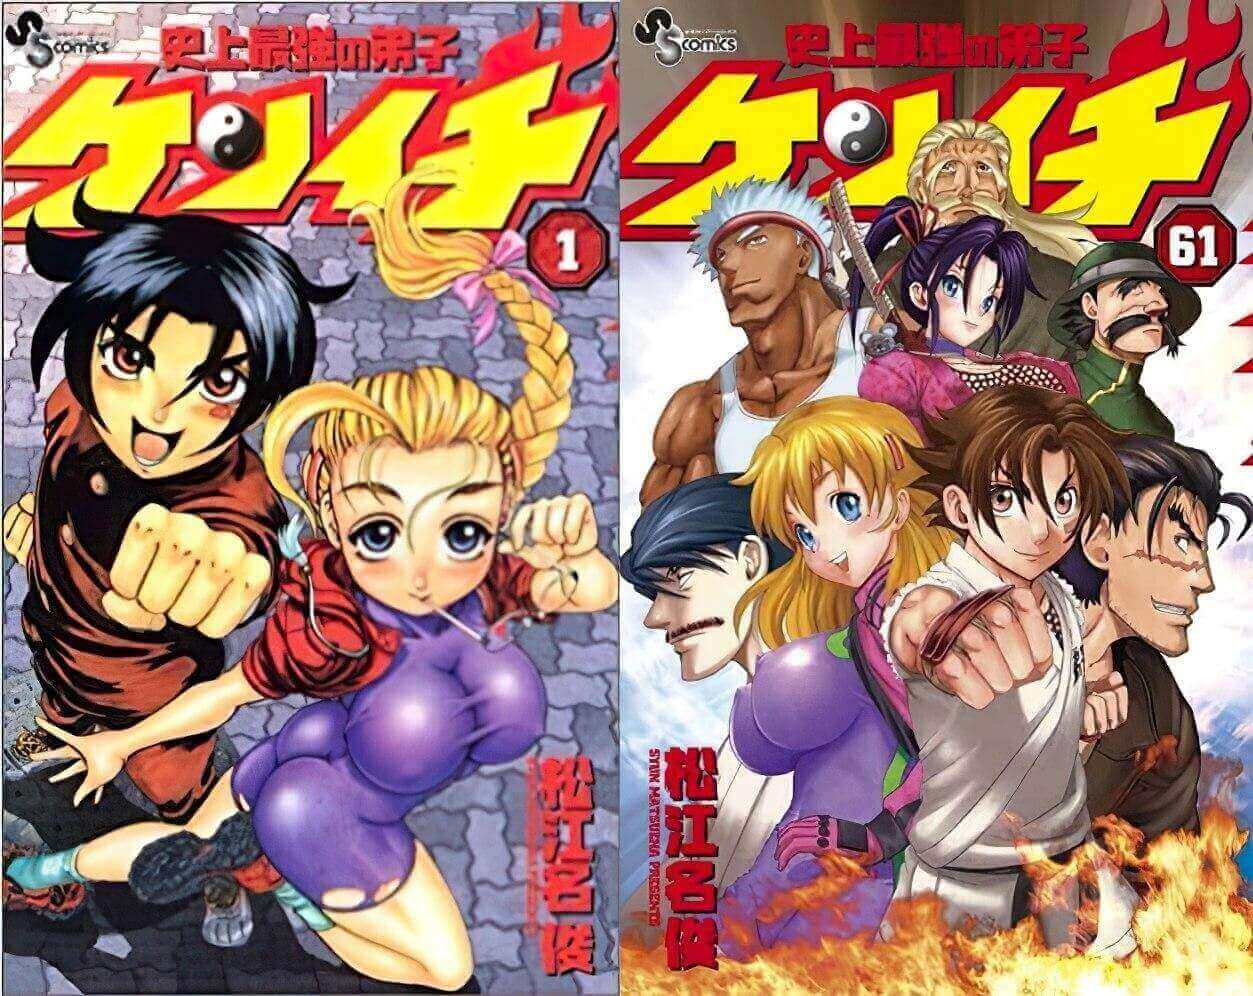 Shijou Saikyou no Deshi Kenichi arte do manga evolução